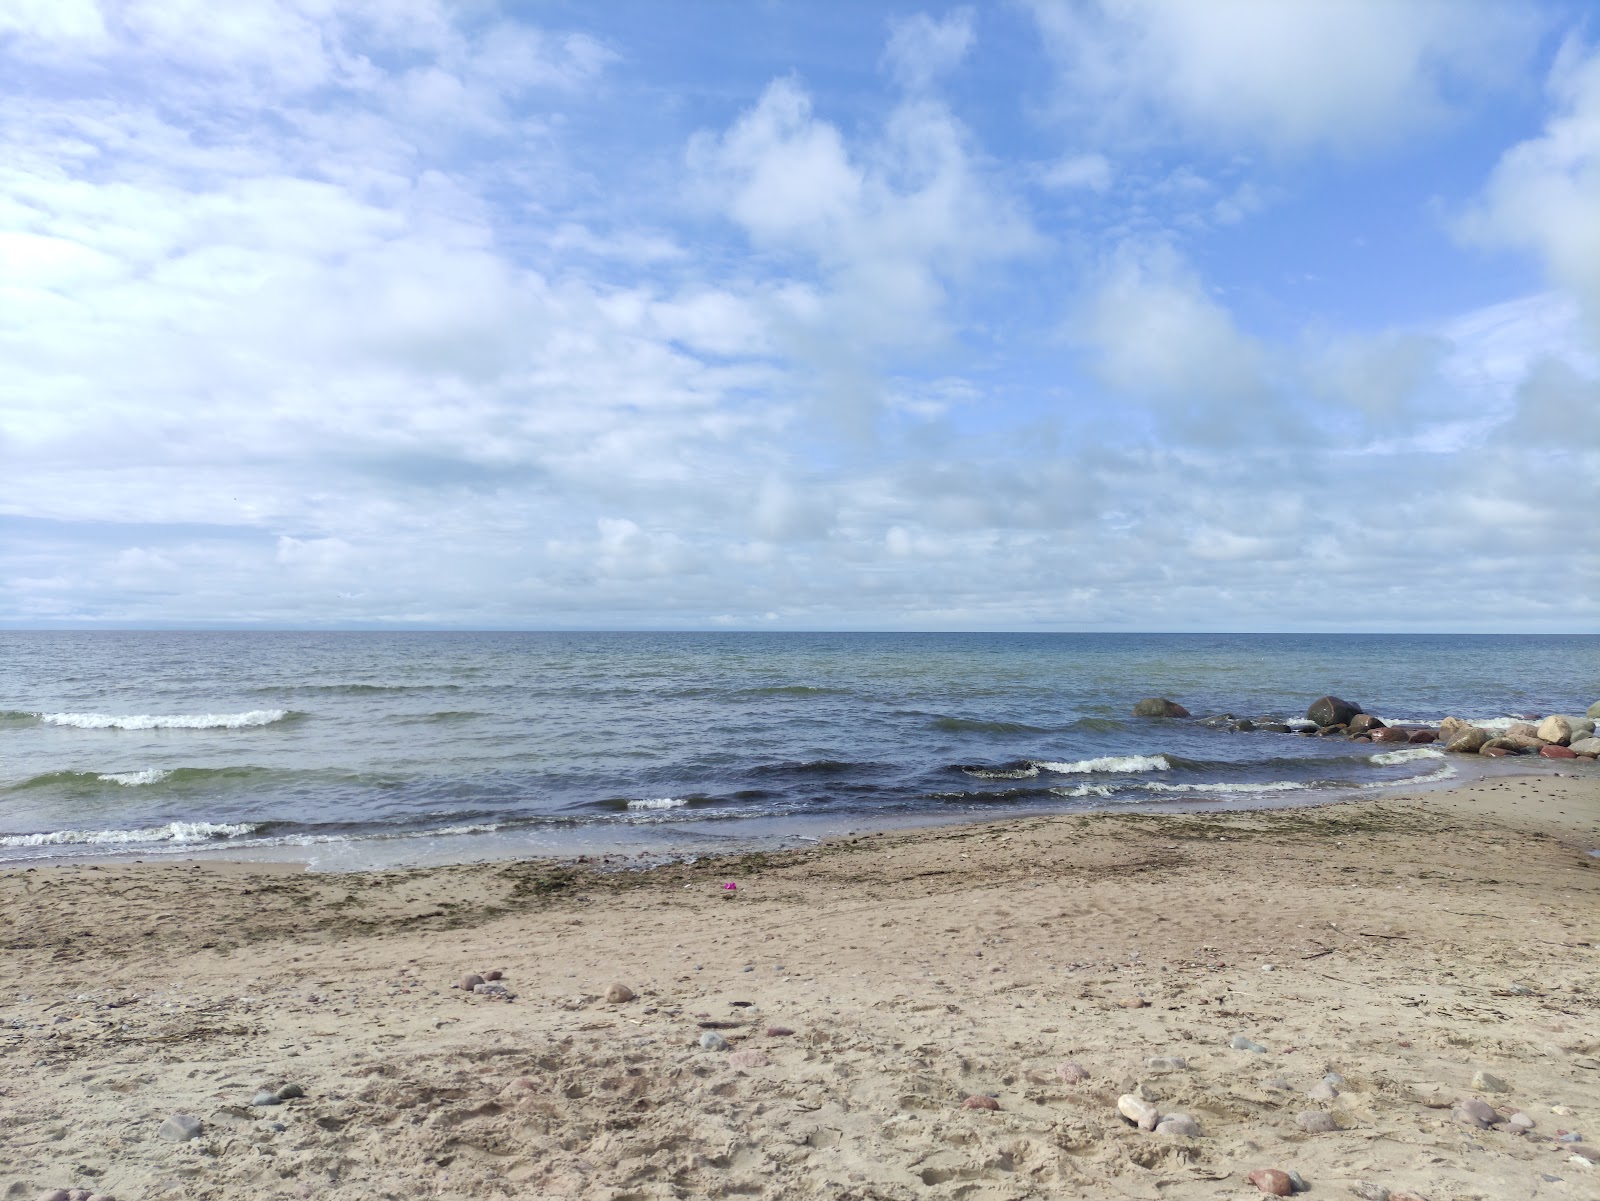 Valokuva Karkles beachista. sijaitsee luonnonalueella